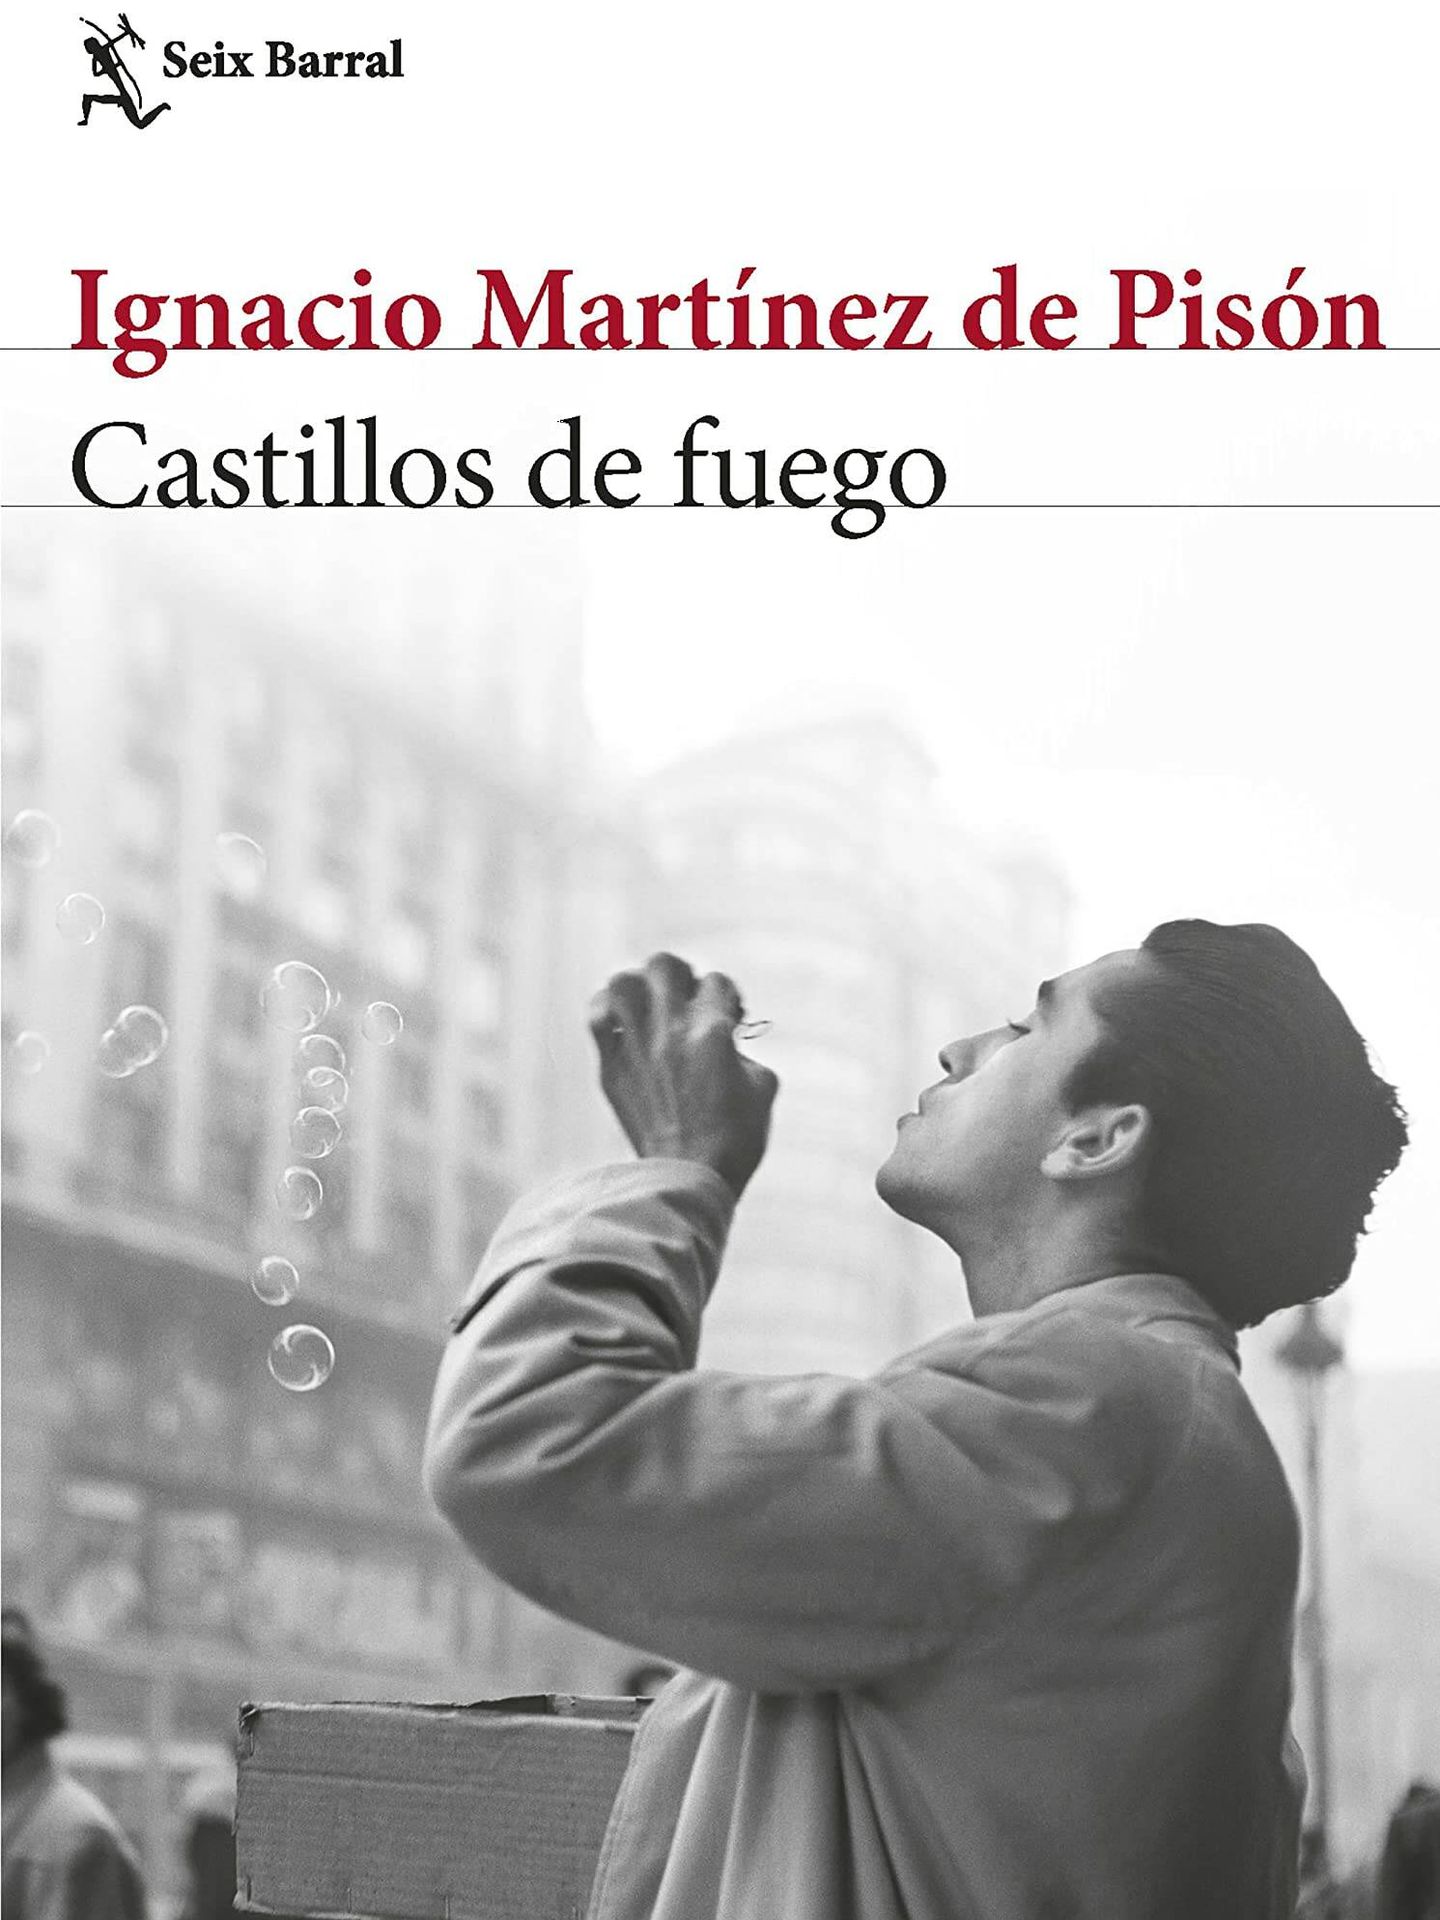 Portada de 'Castillos de fuego', el nuevo libro de Ignacio Martínez de Pisón.